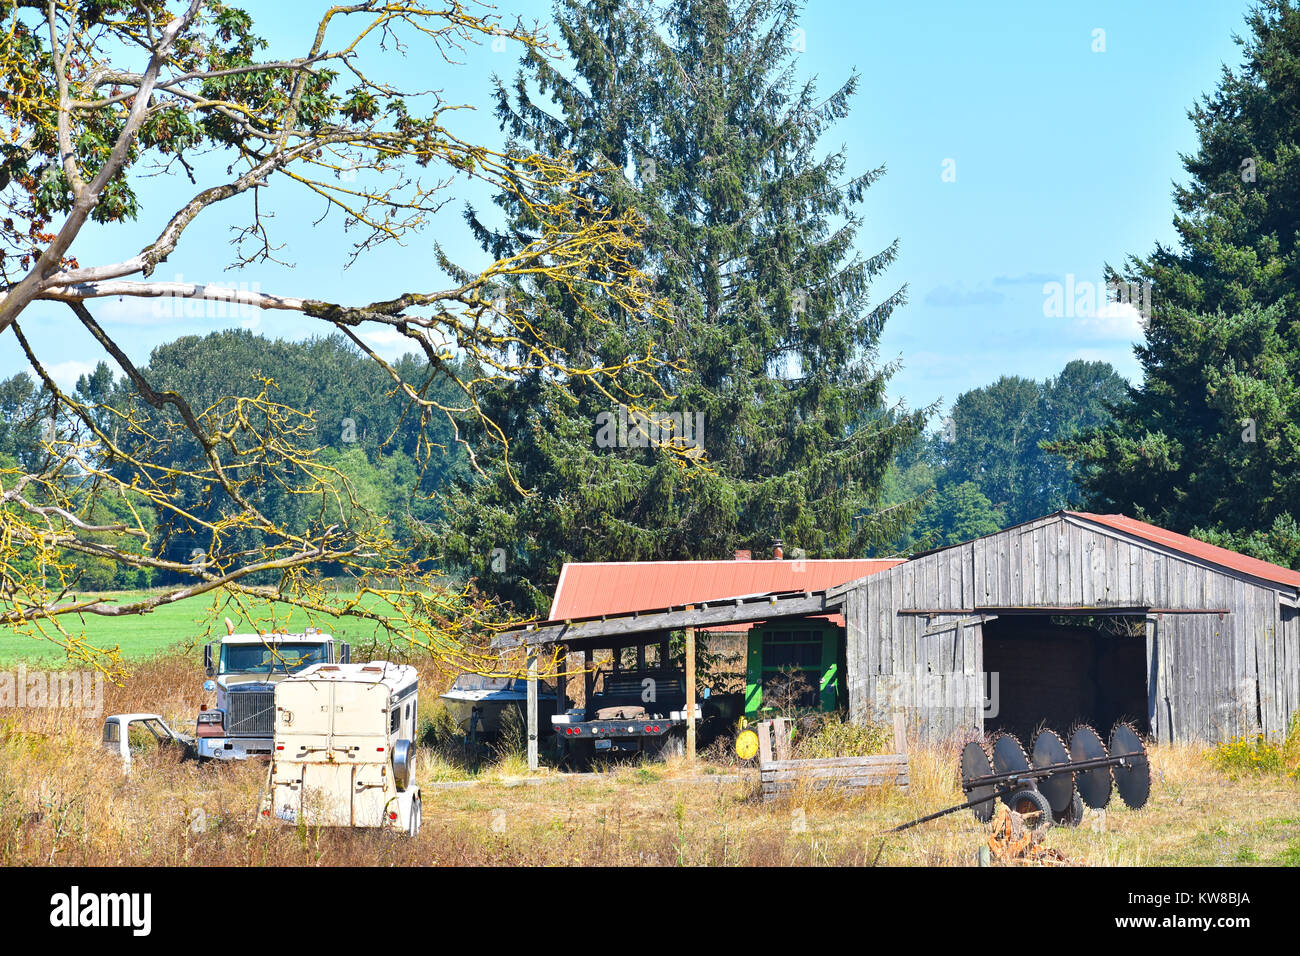 Un old weathered barn avec équipement de ferme, bateau, camion, camion et remorque pour cheval dans la campagne du nord-ouest du Pacifique de la ville de Bellingha Banque D'Images